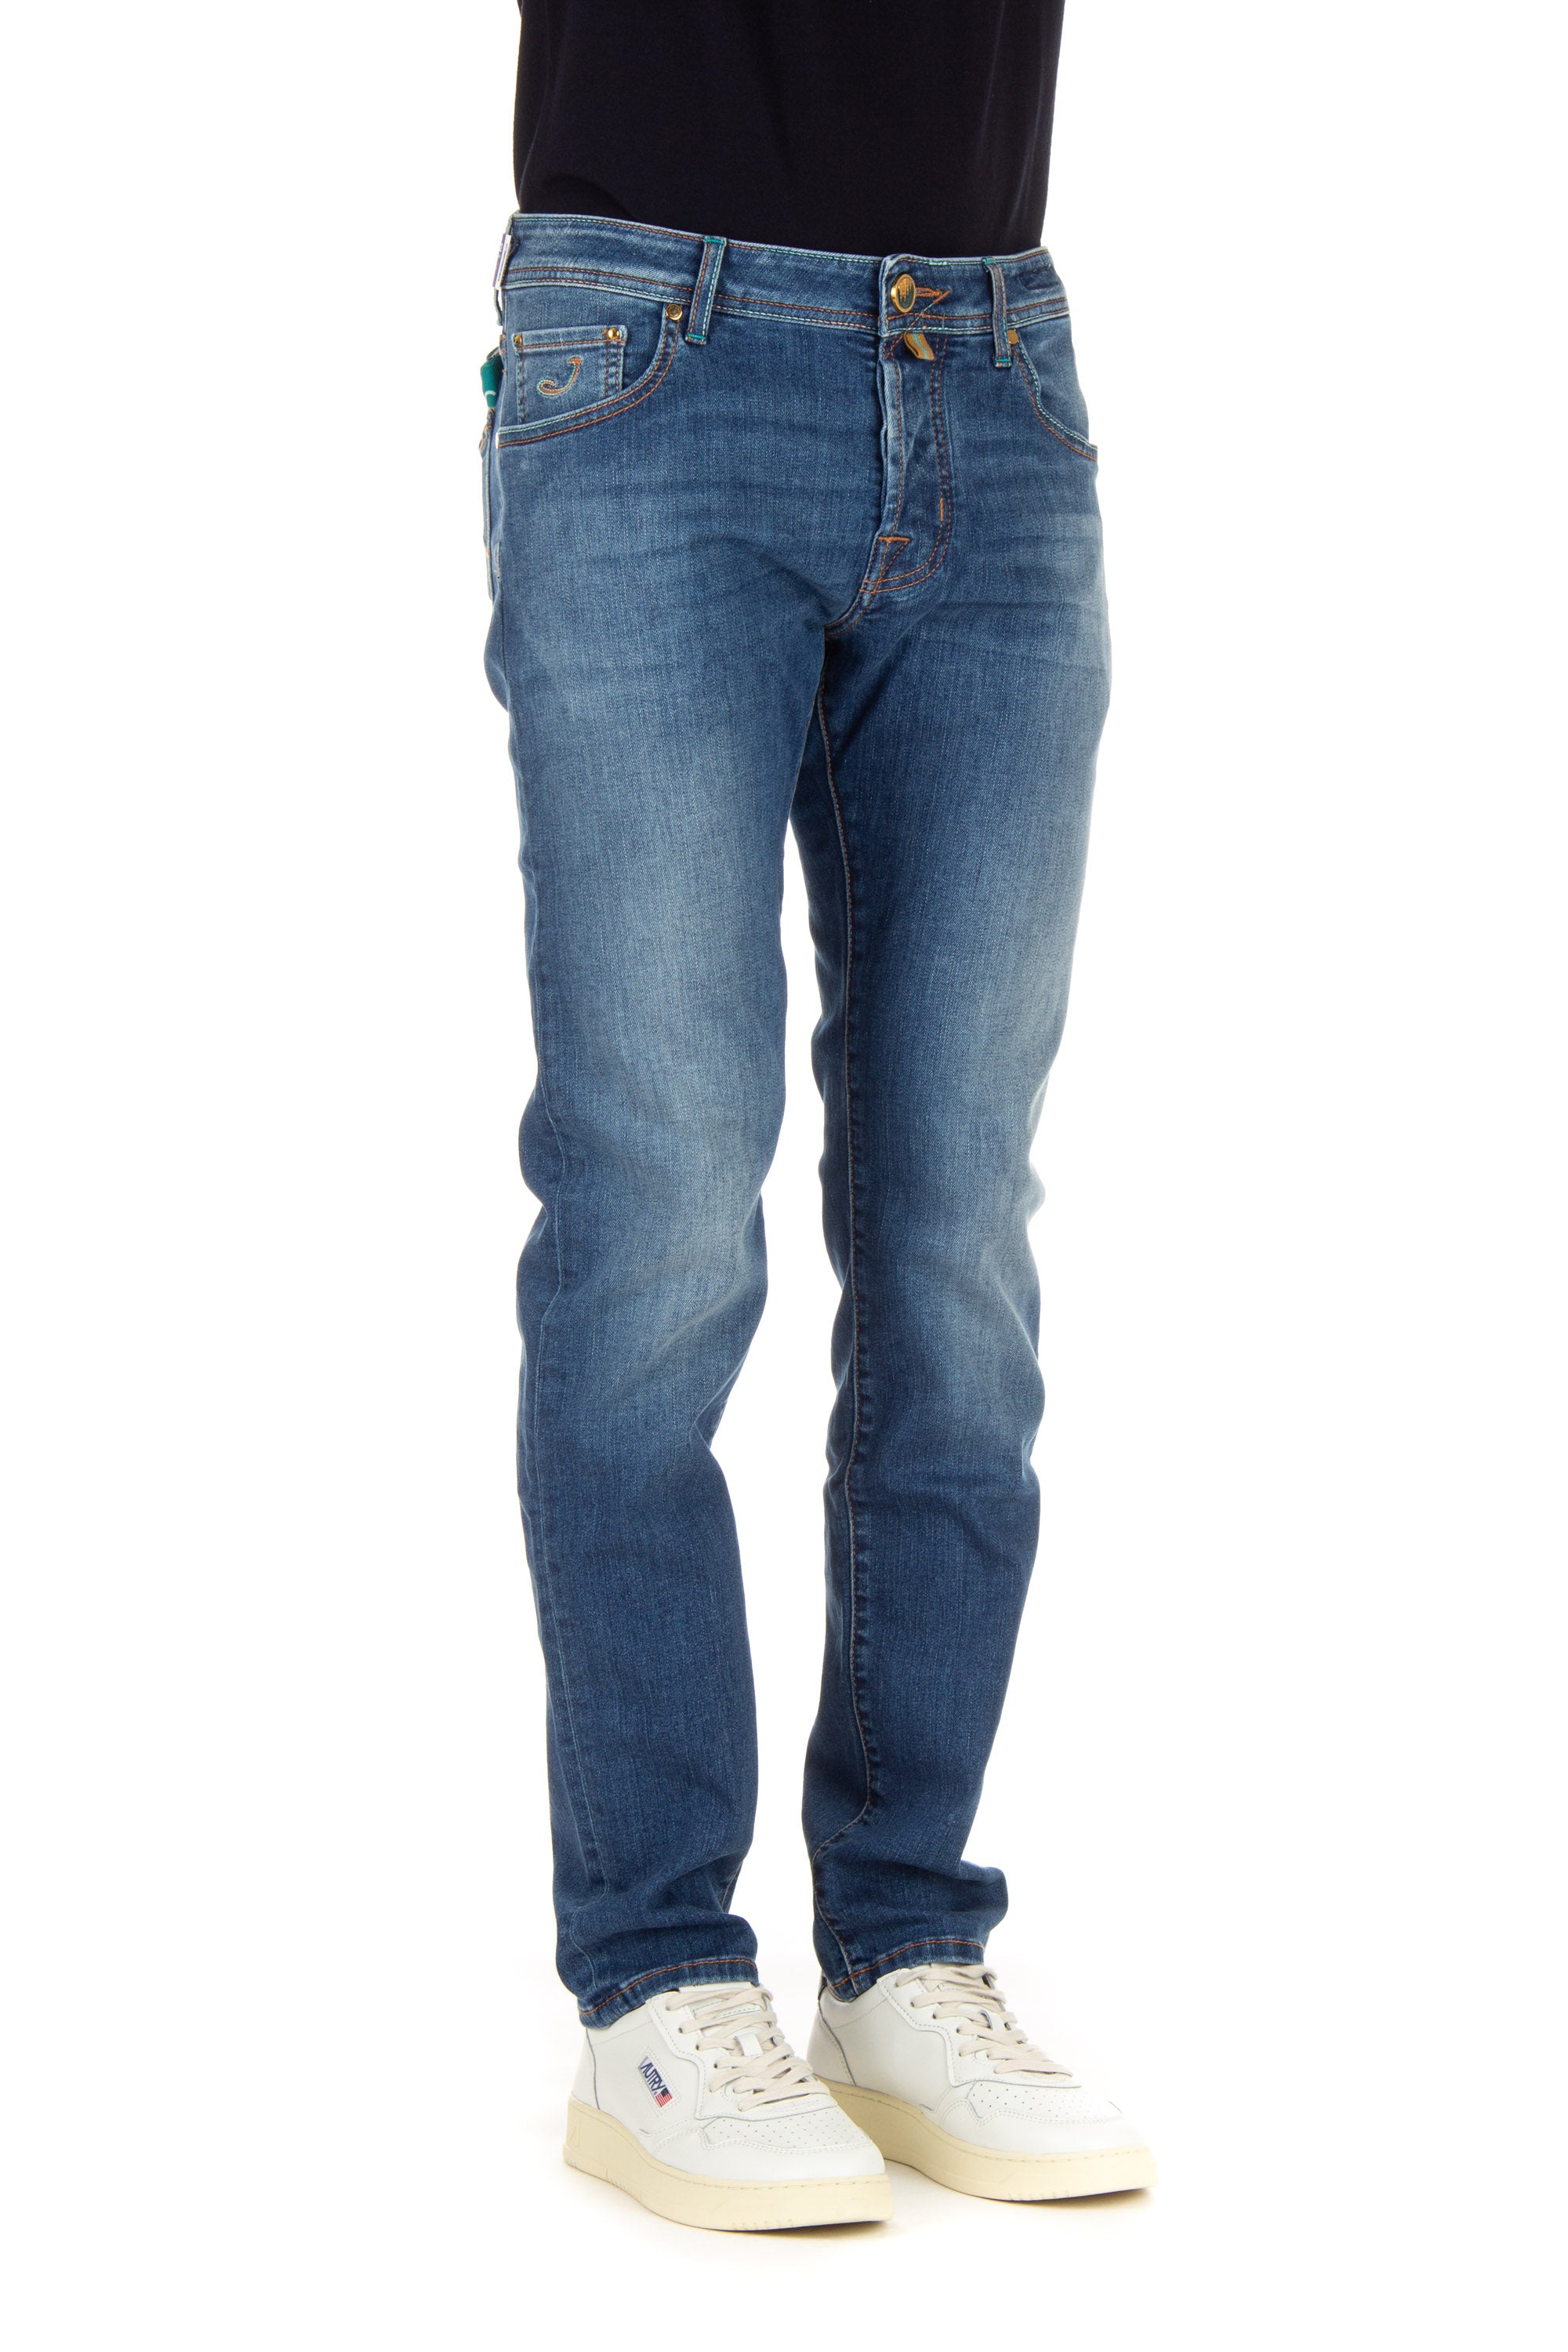 Jeans special edition etichetta duomo di milano lavaggio chiaro nick slim fit